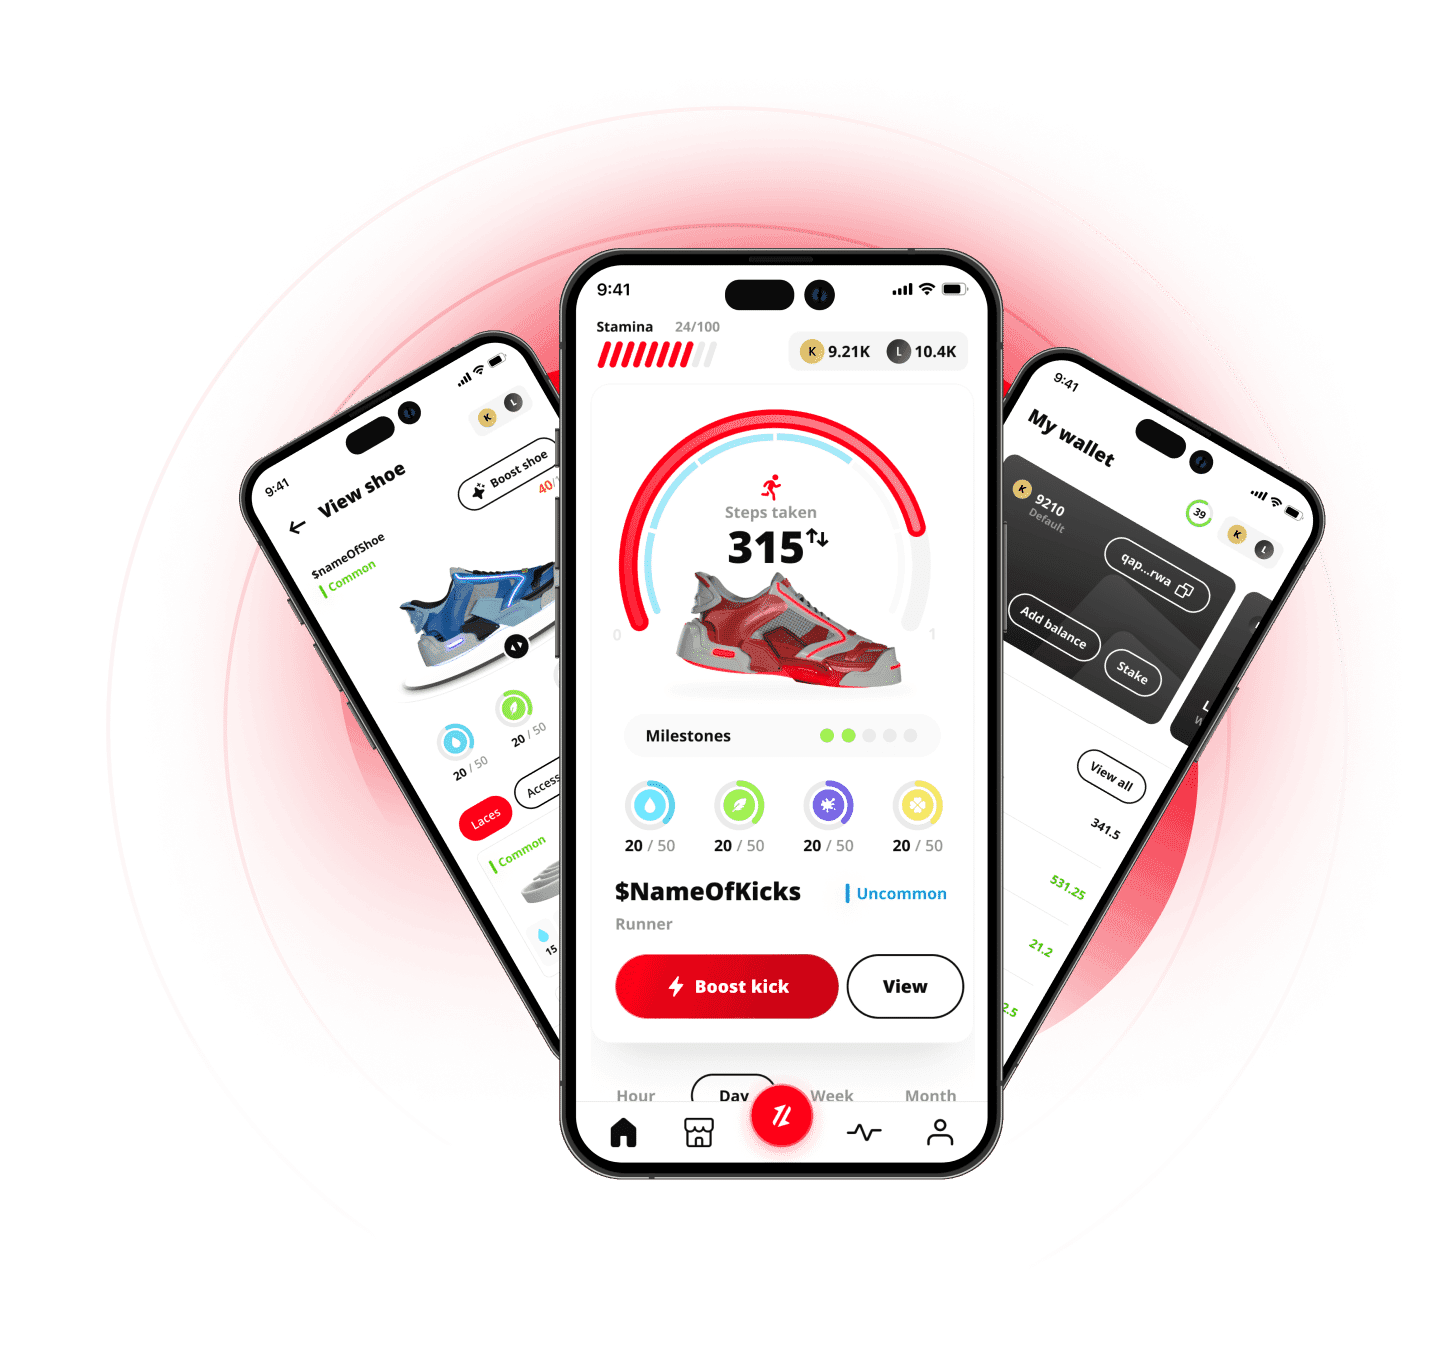 GetKicks, die Web3-App für Sneaker-Enthusiasten. 3D-NFT wagt sich in die Welt des „Move to Earn“ und sammelt dabei futuristische und stilvolle Schuhe